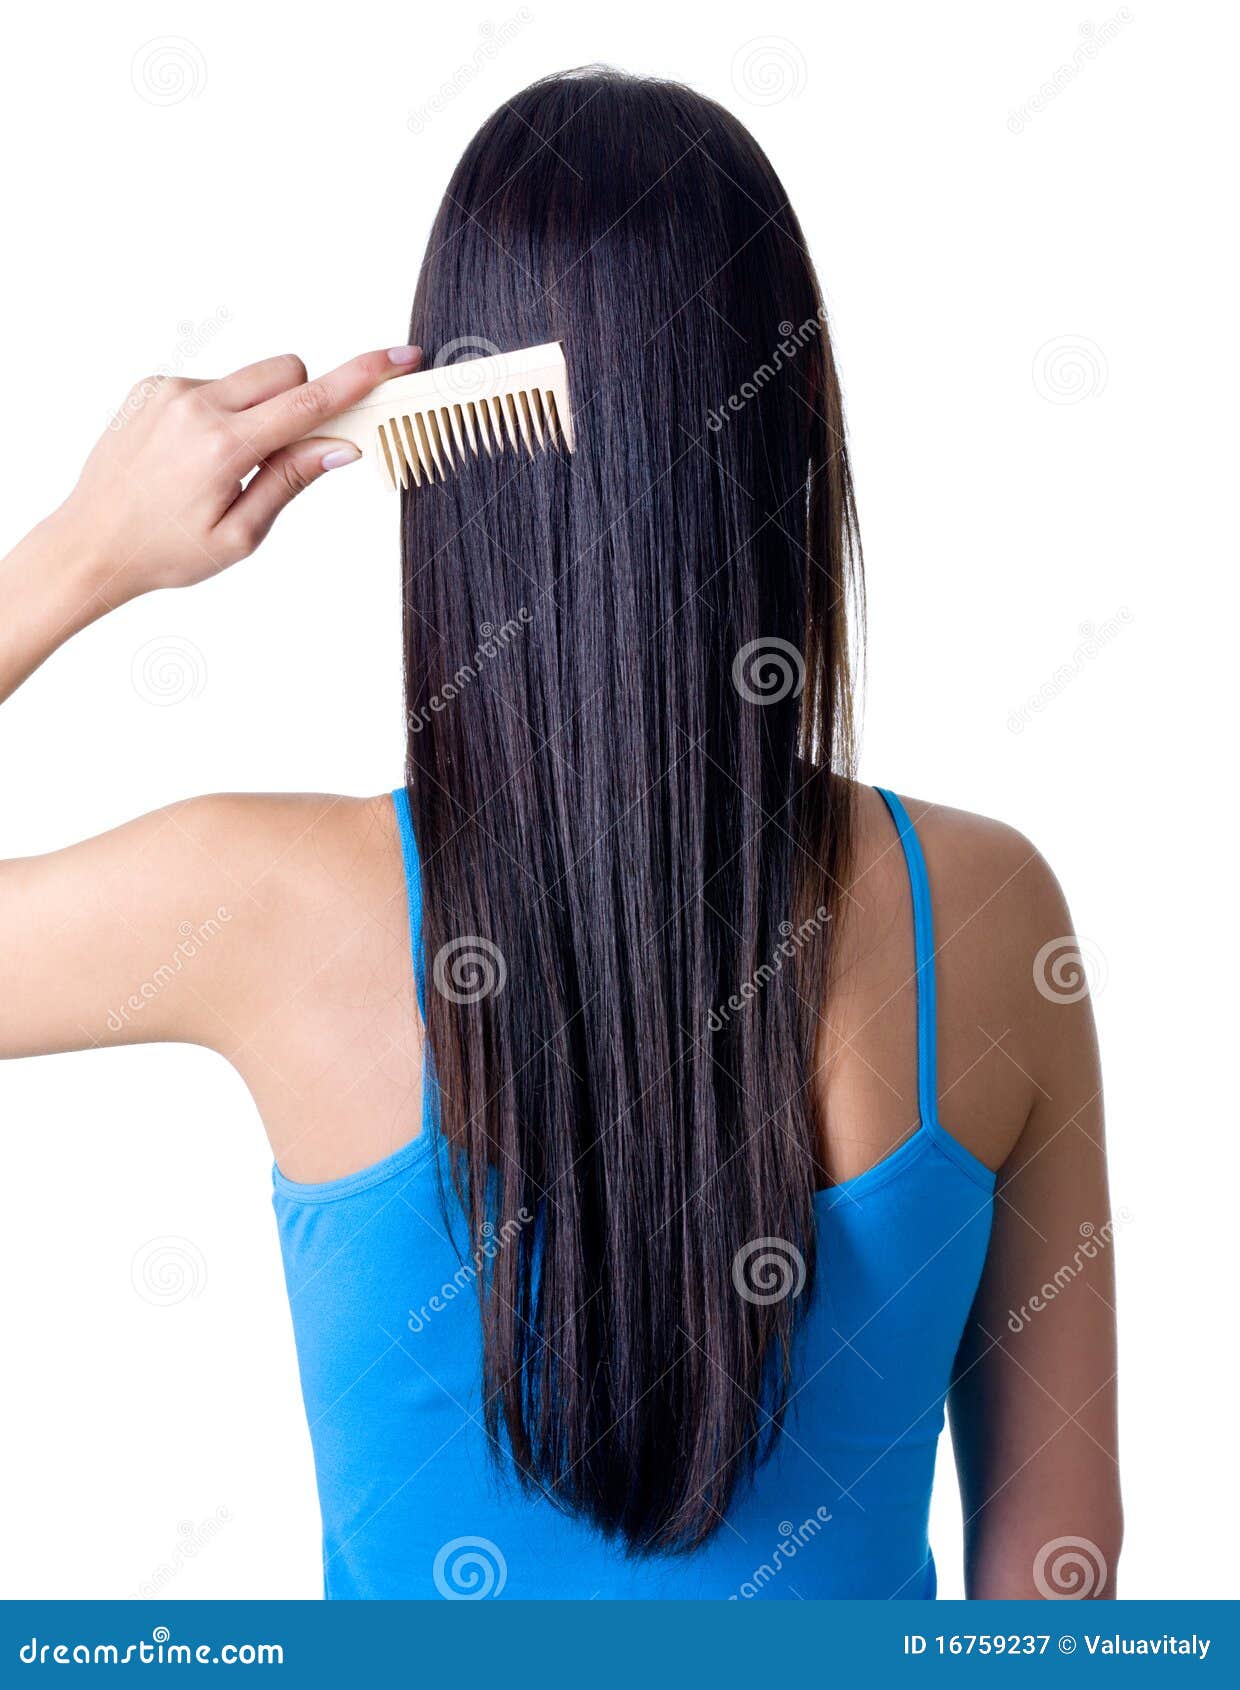 梳女孩头发 库存图片. 图片 包括有 微笑, 关心, 女孩, 人员, 白种人, 空白, 梳子, 纵向, 发型 - 22028095